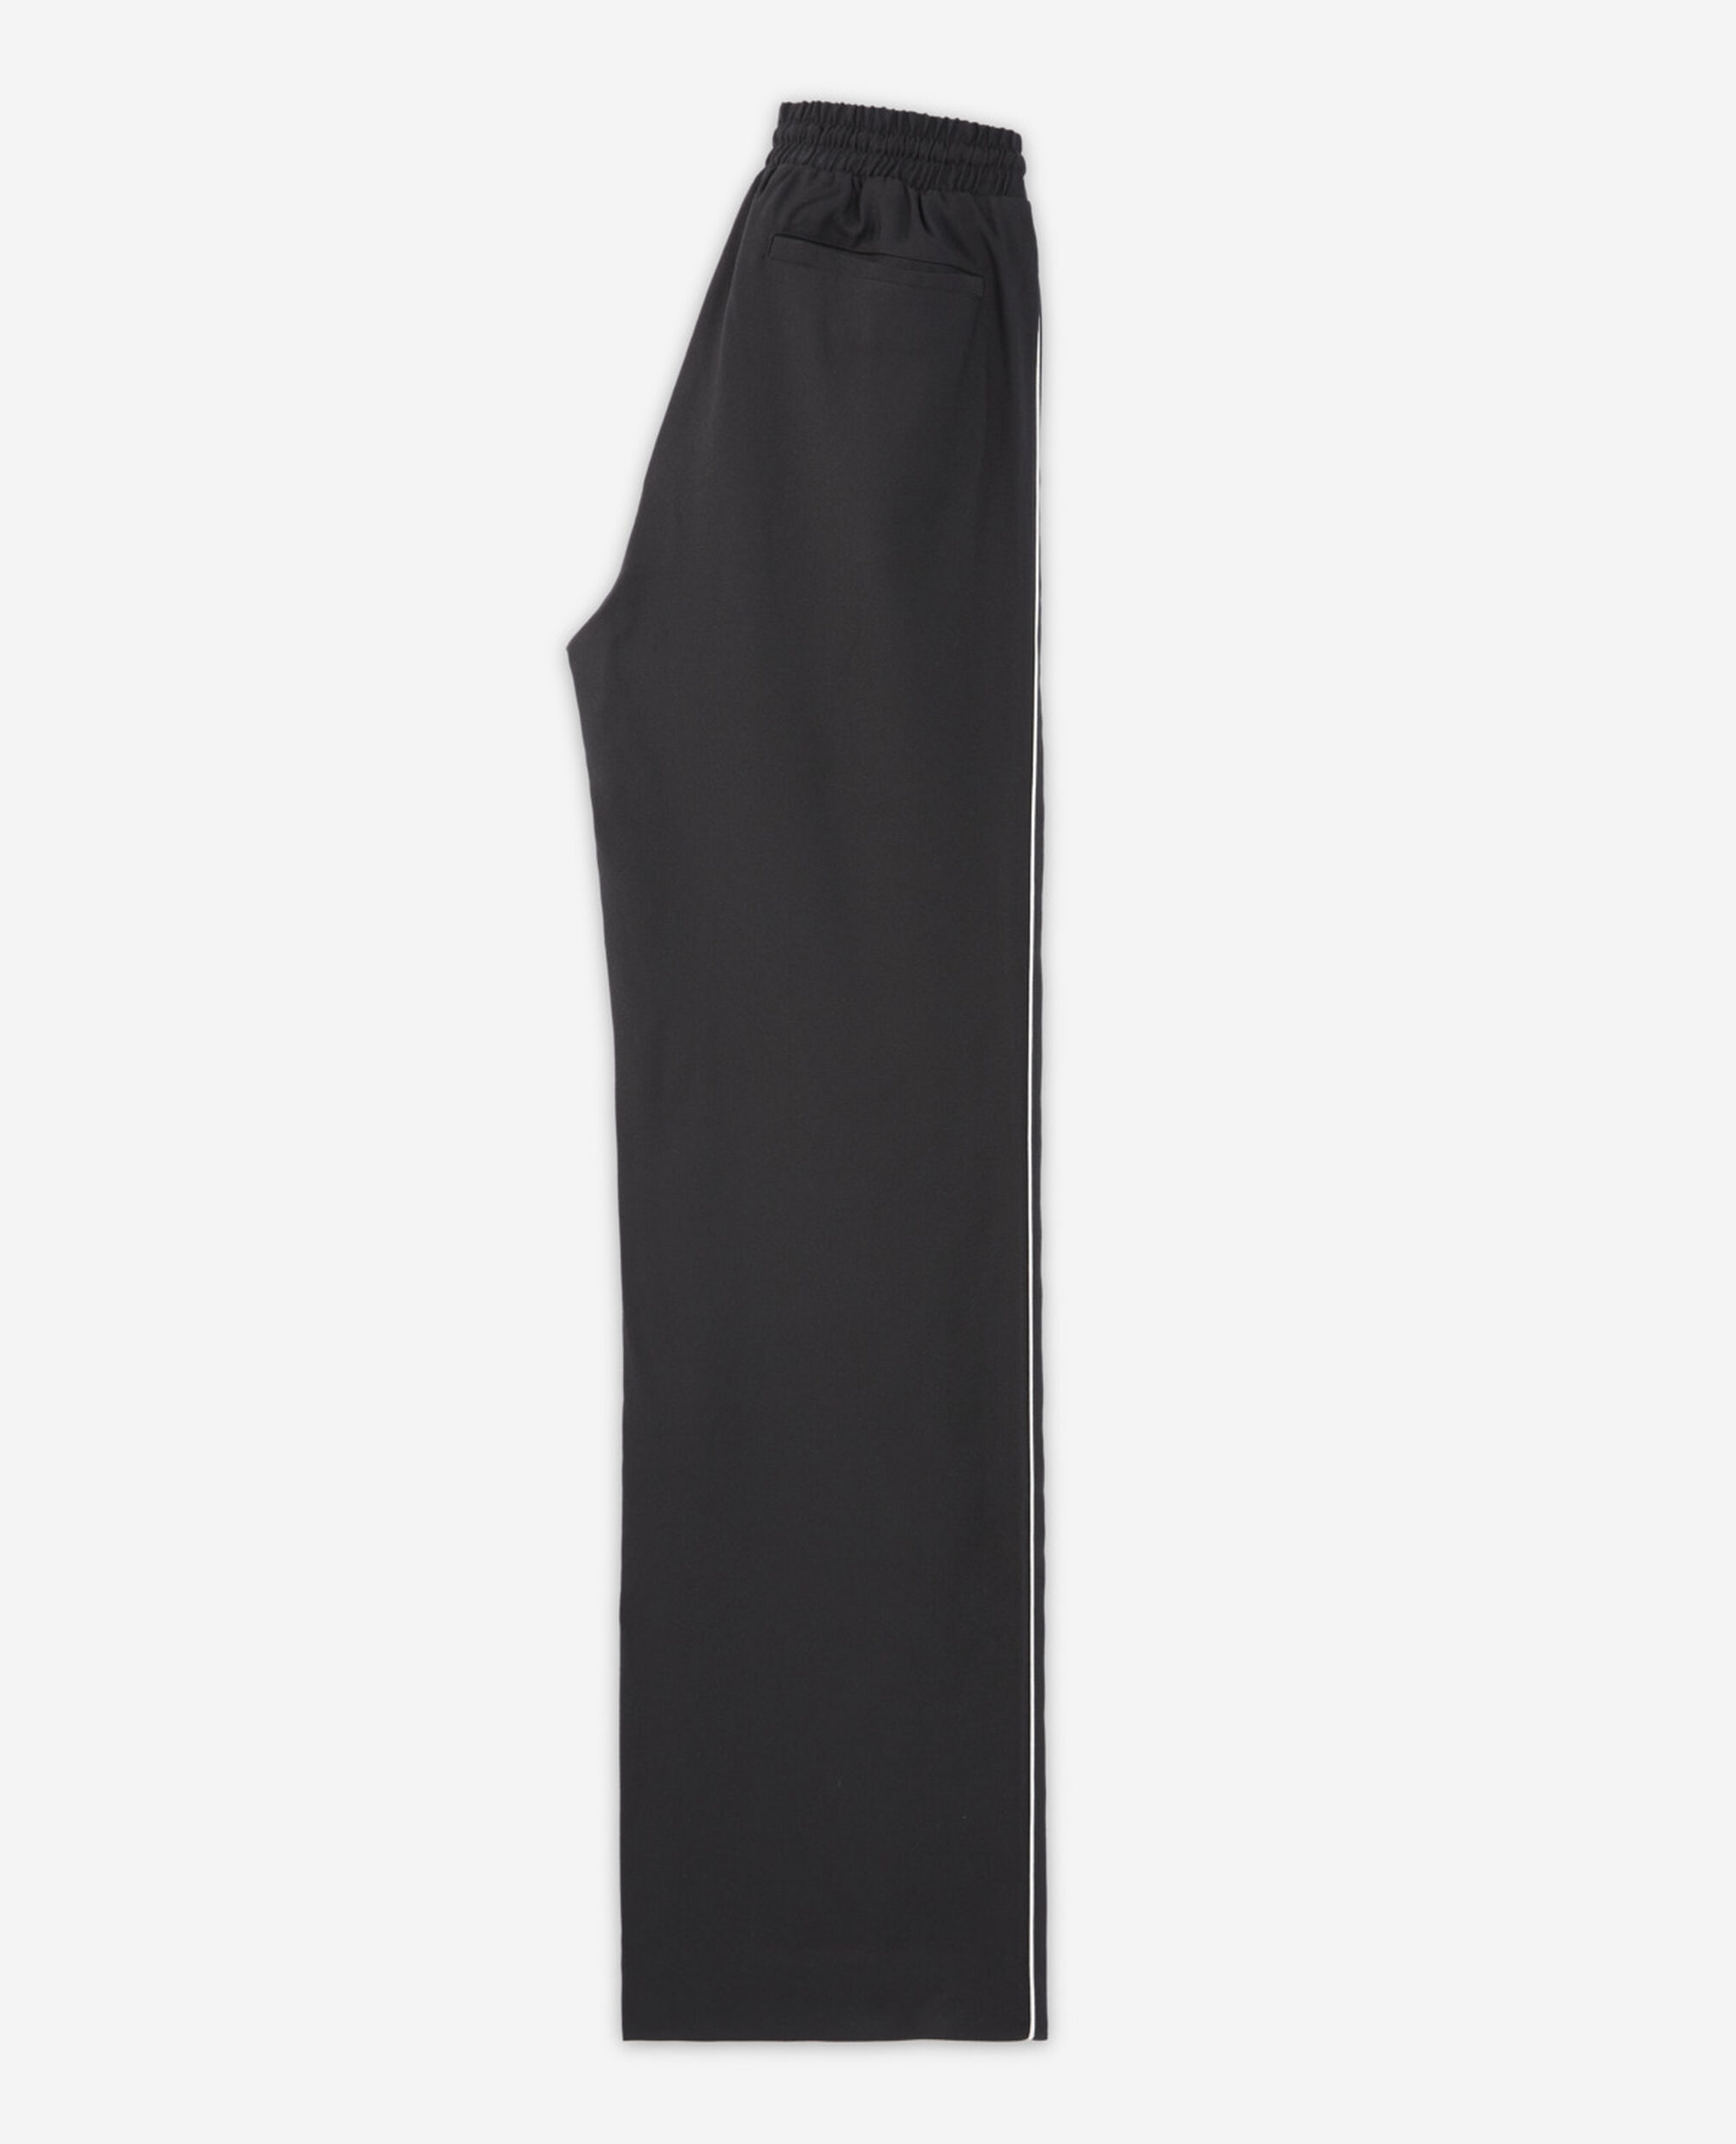 Pantalón fluido negro satén cordón cintura, BLACK, hi-res image number null